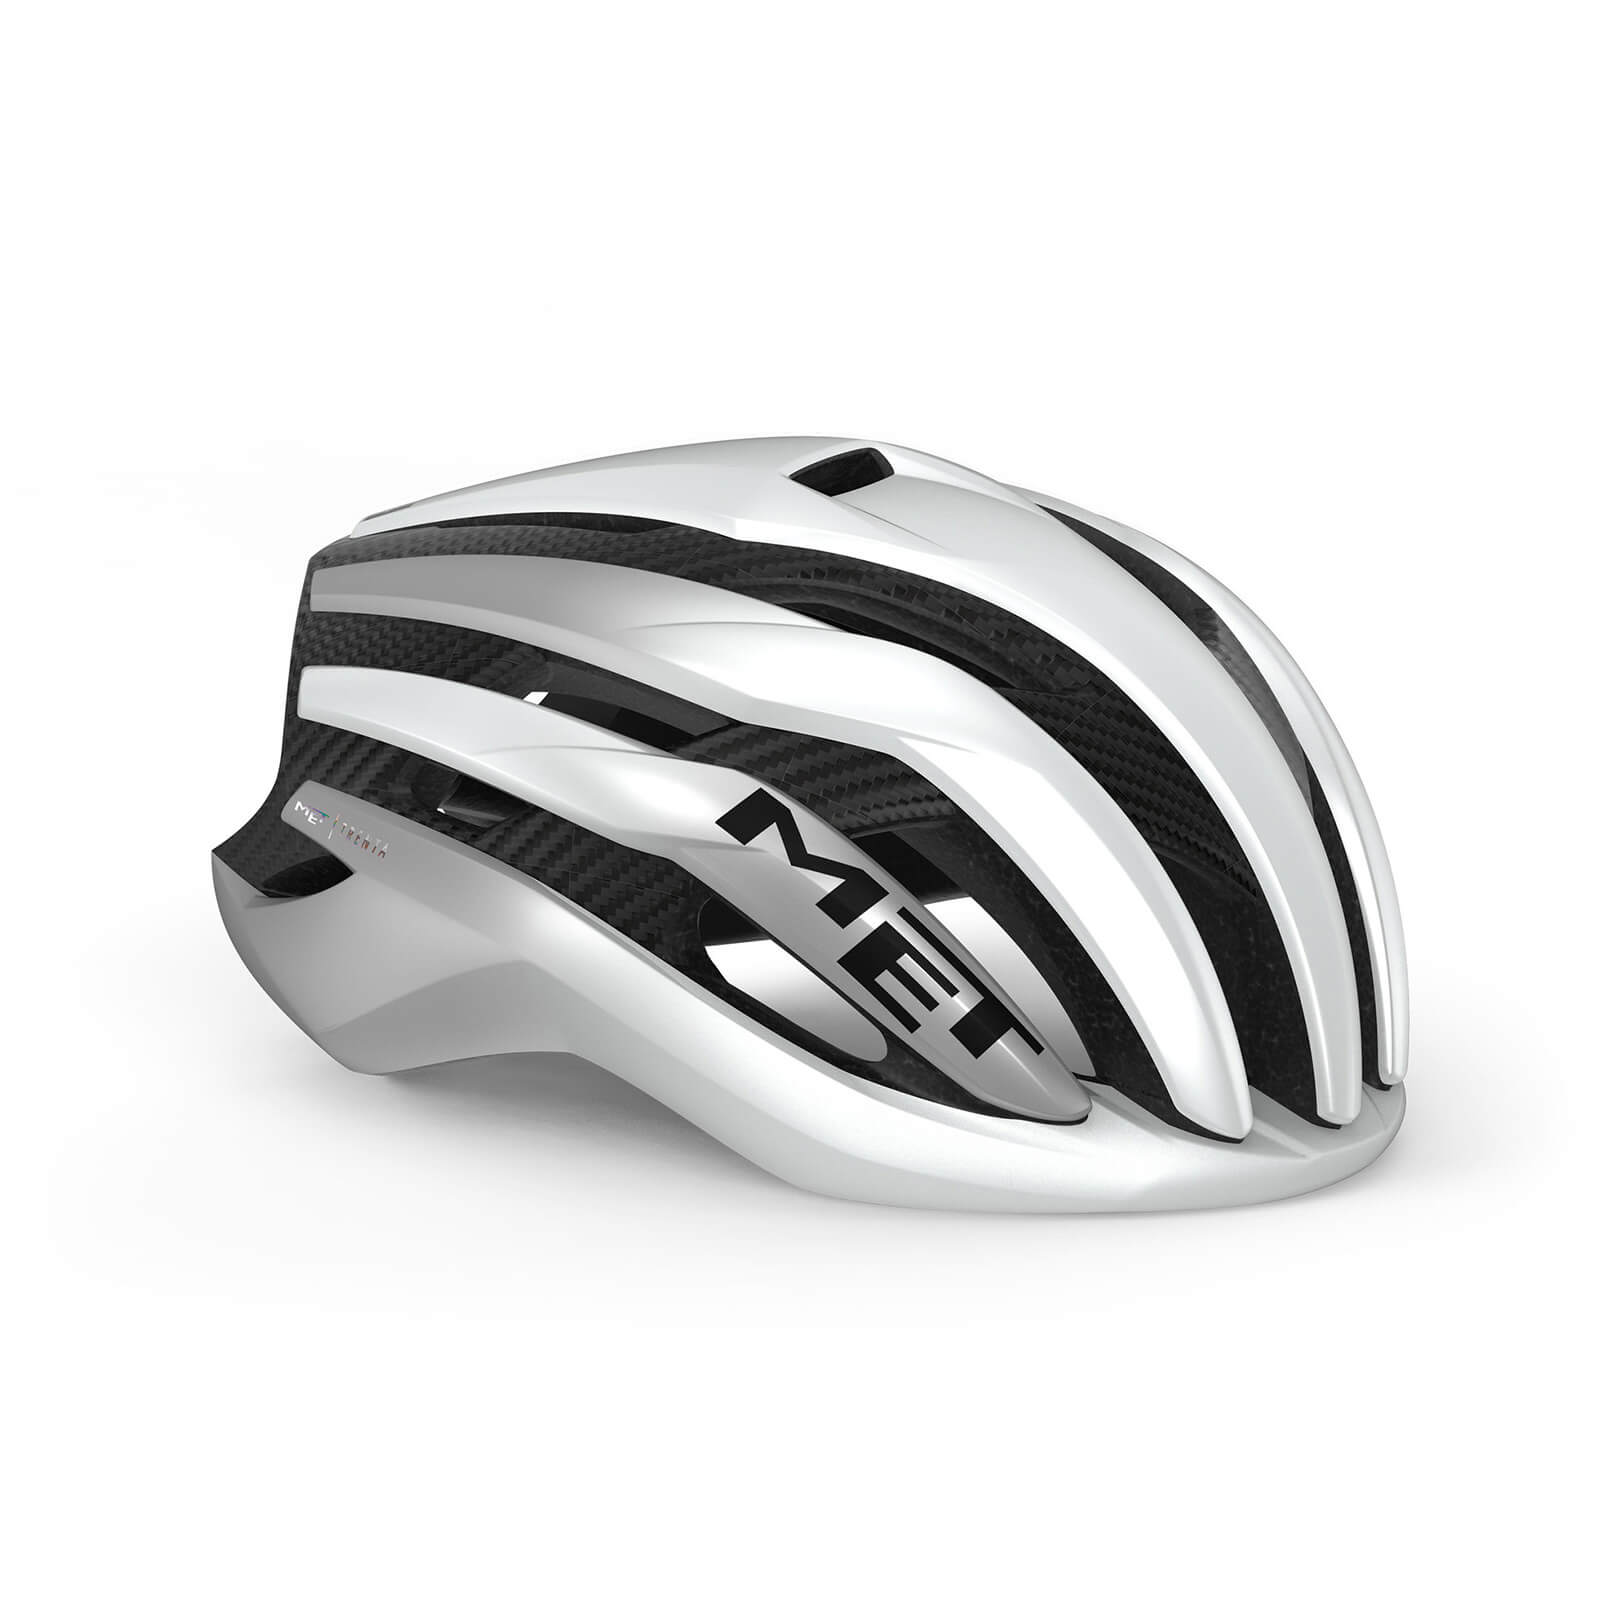 MET Trenta 3K Carbon MIPS Road Helmet - M - Silver